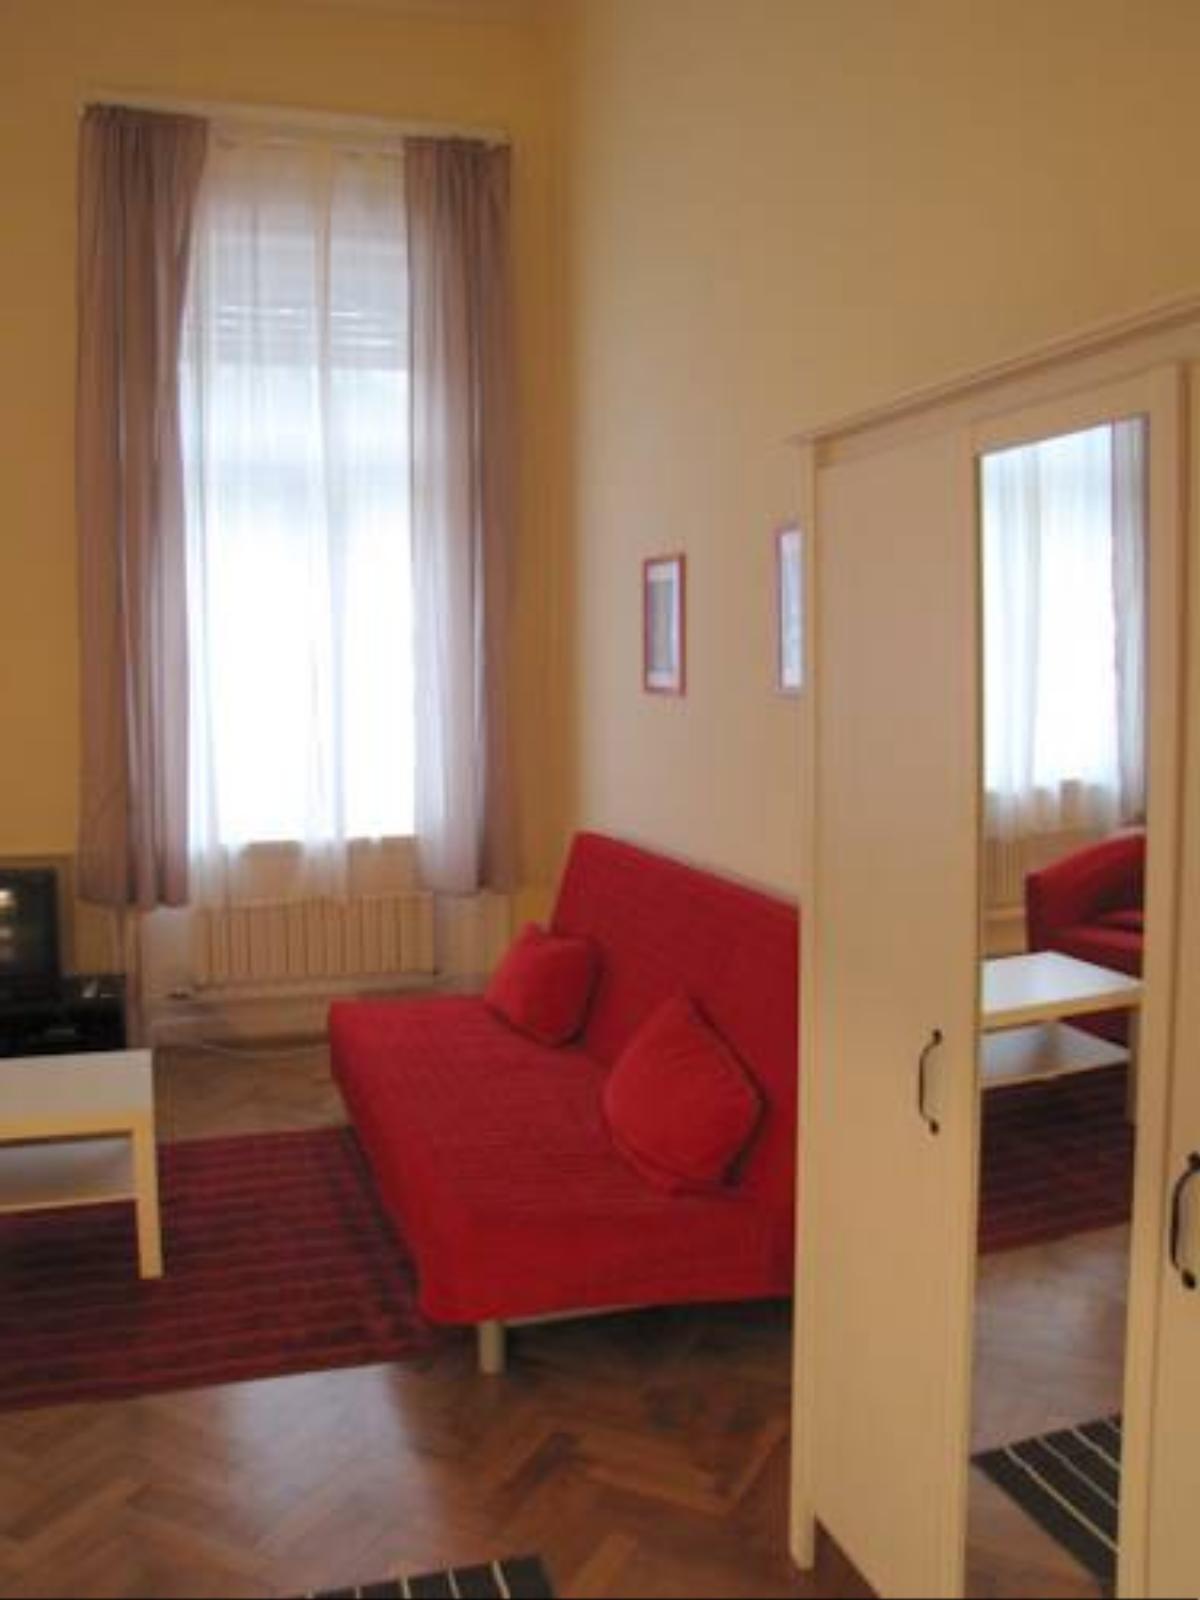 Királyi Apartment Hotel Budapest Hungary